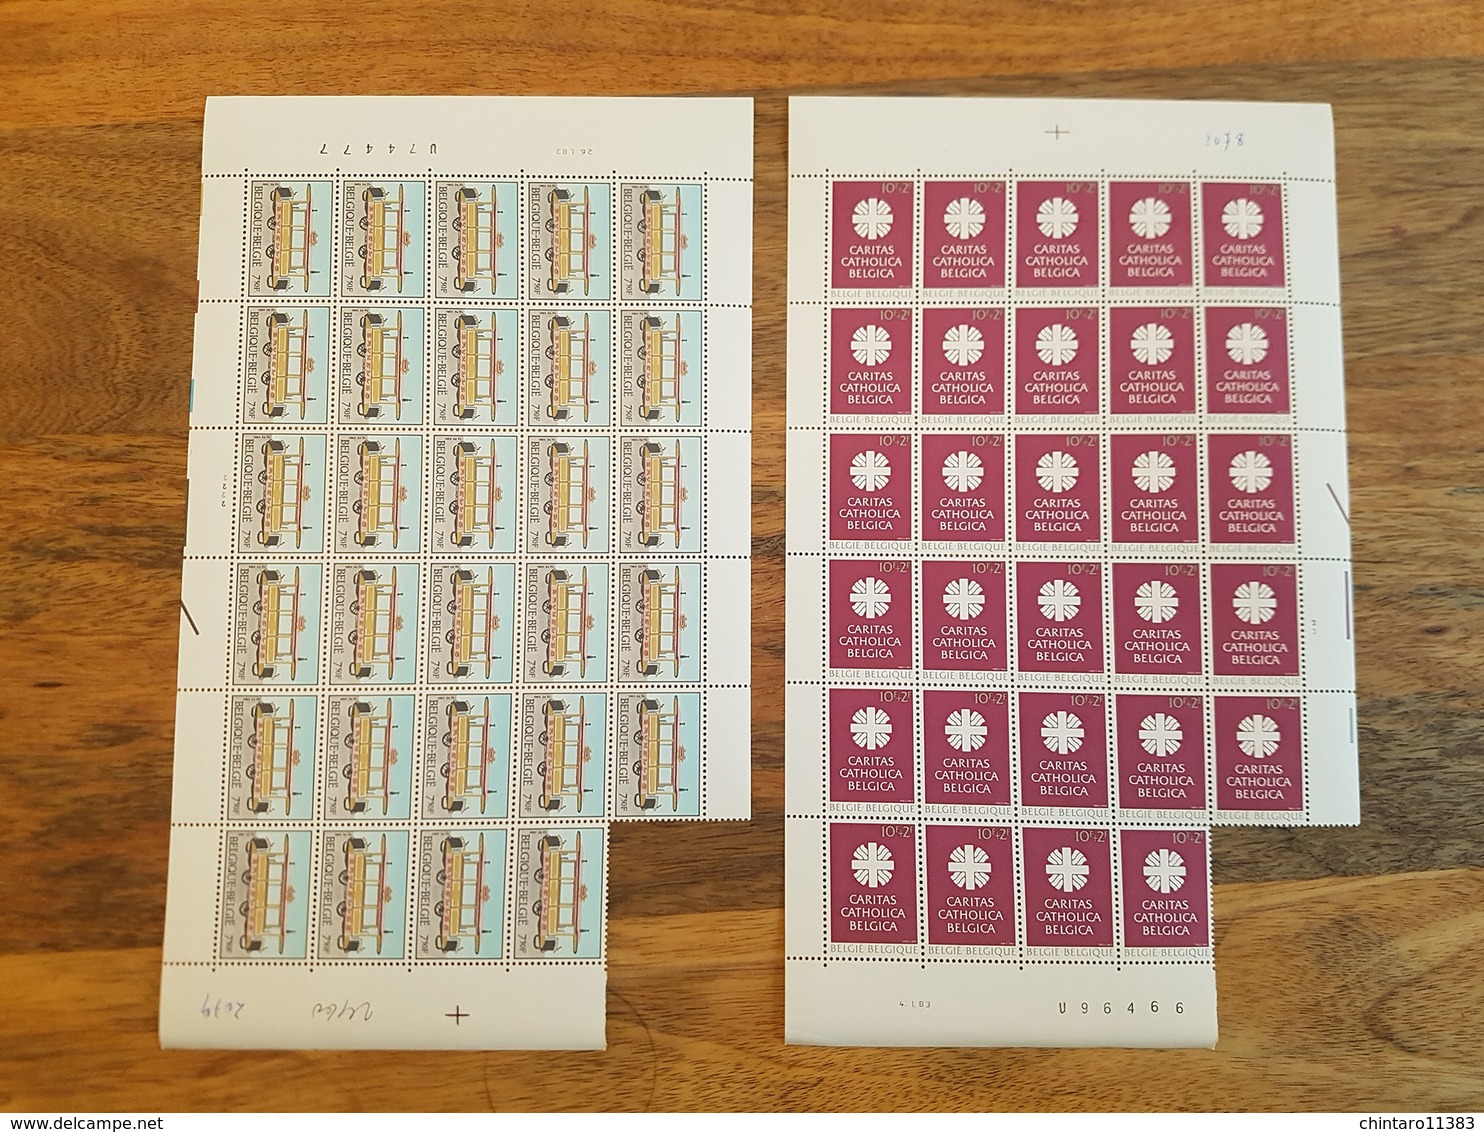 Lot feuilles incomplètes (manque 1) de timbres Belgique - Année 1983